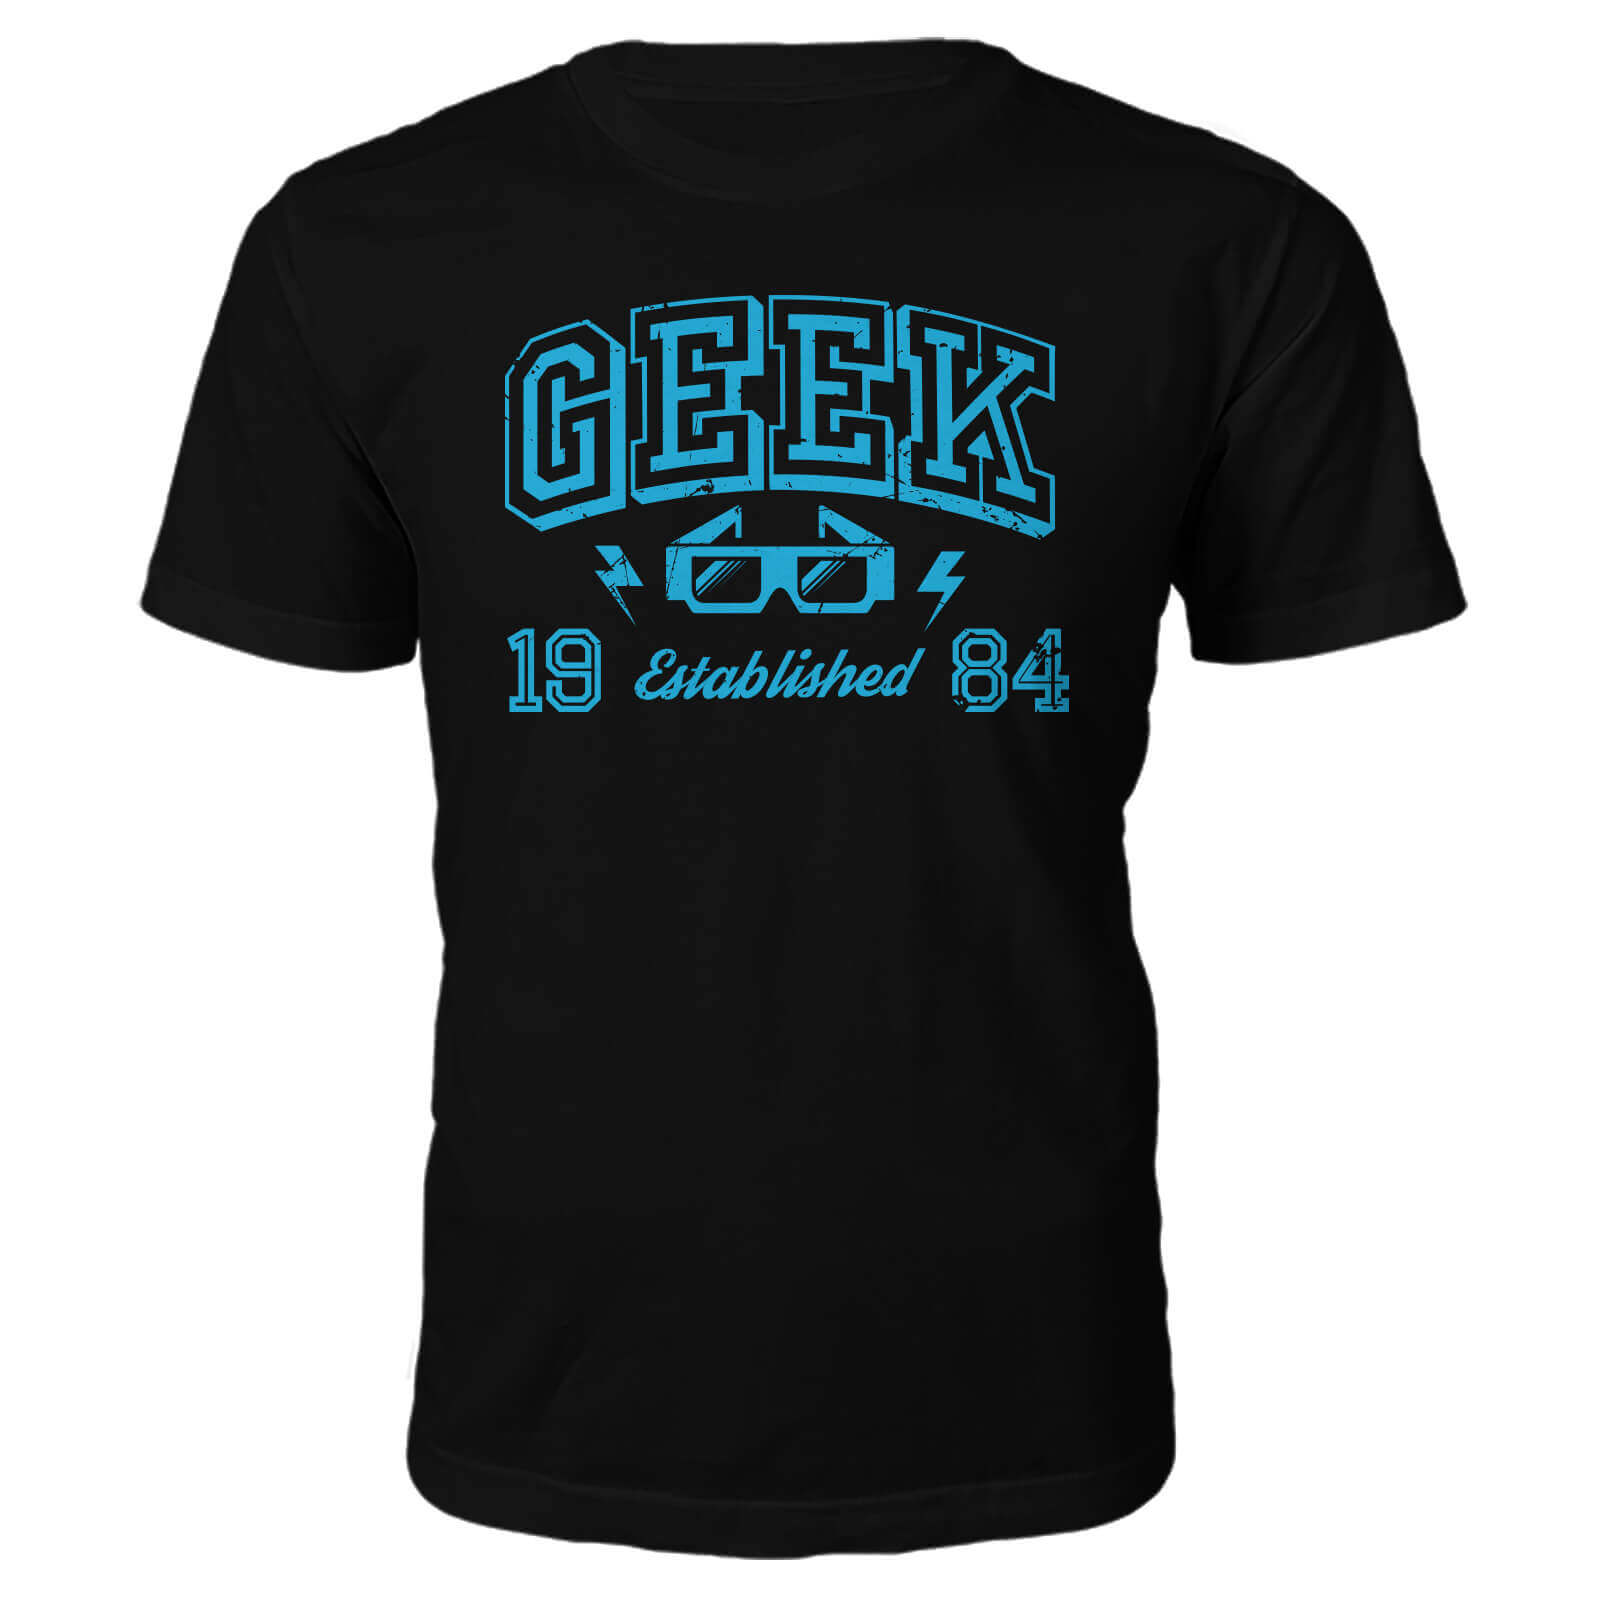 Geek Established 1980's T-Shirt- Black - L - 1984